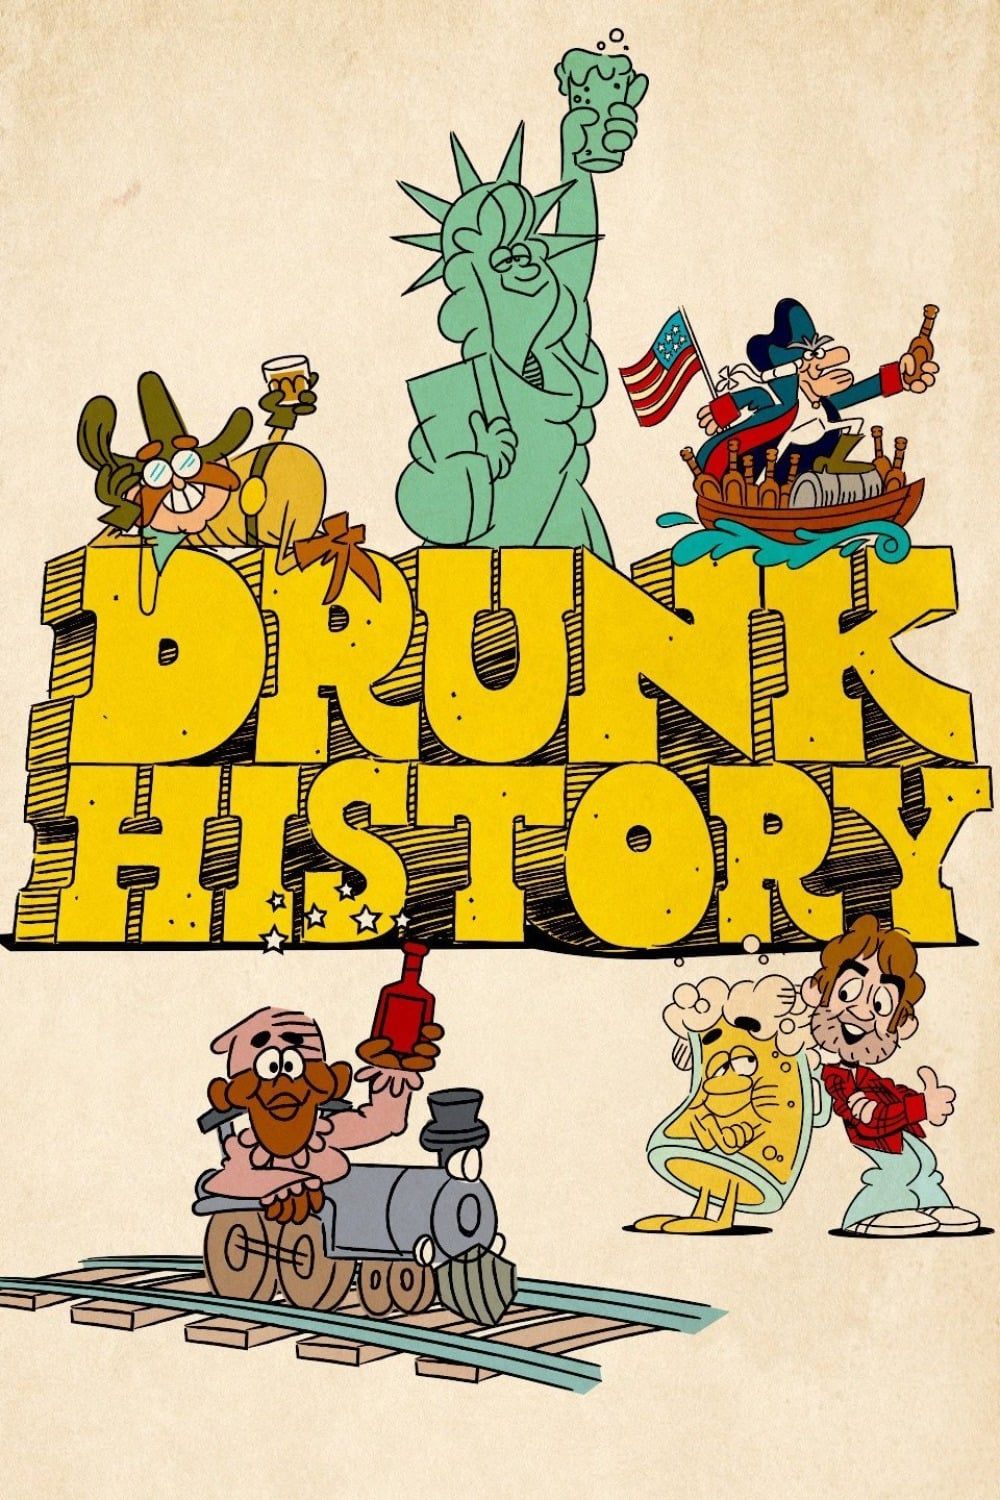 Drunk stories